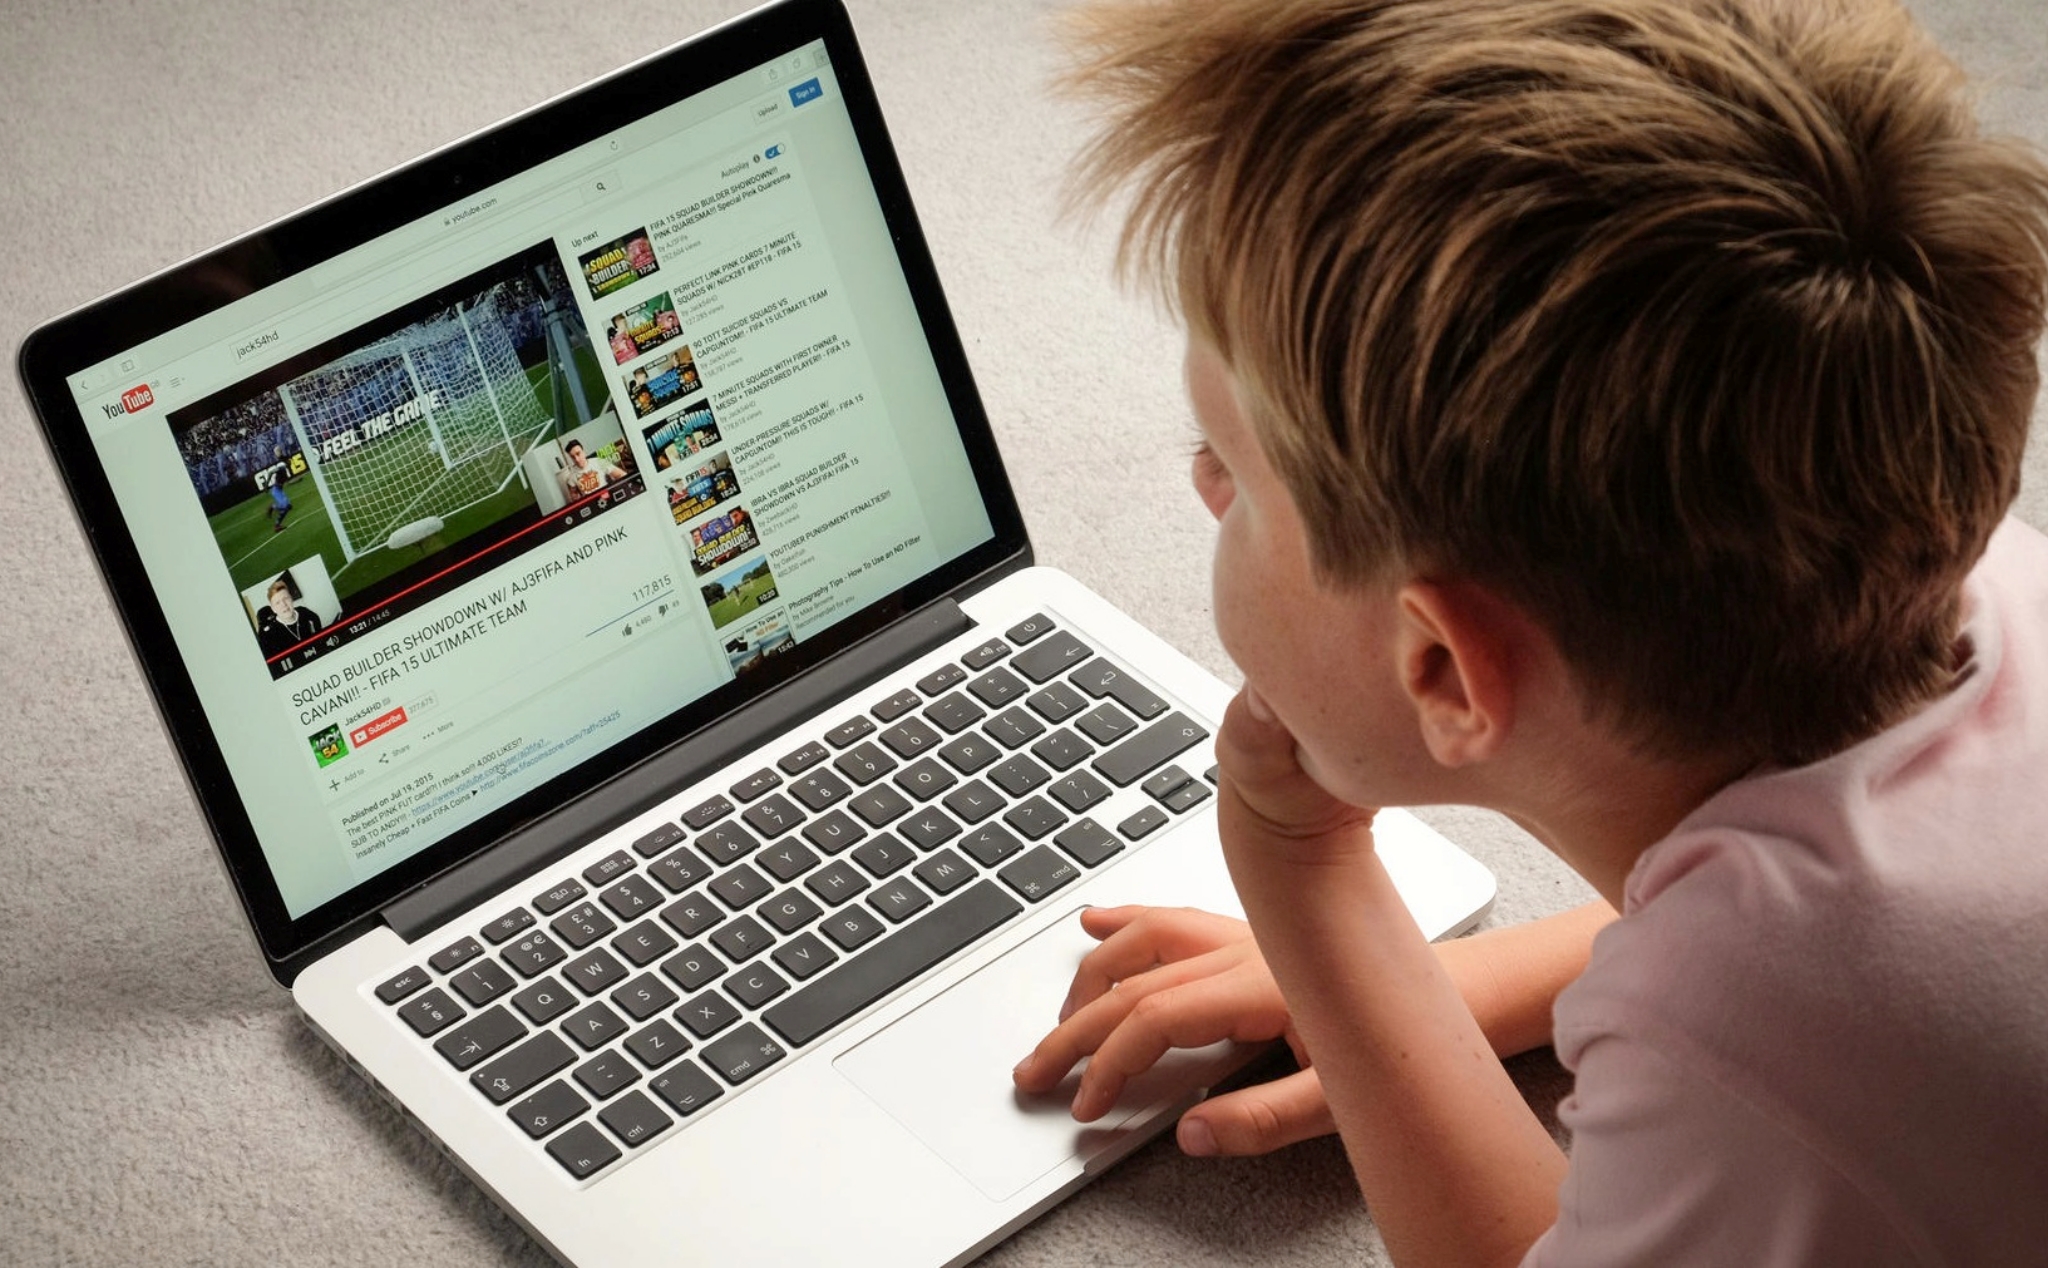 Youtube gấp rút tìm giải pháp bảo vệ trẻ em hoạt động trên mạng